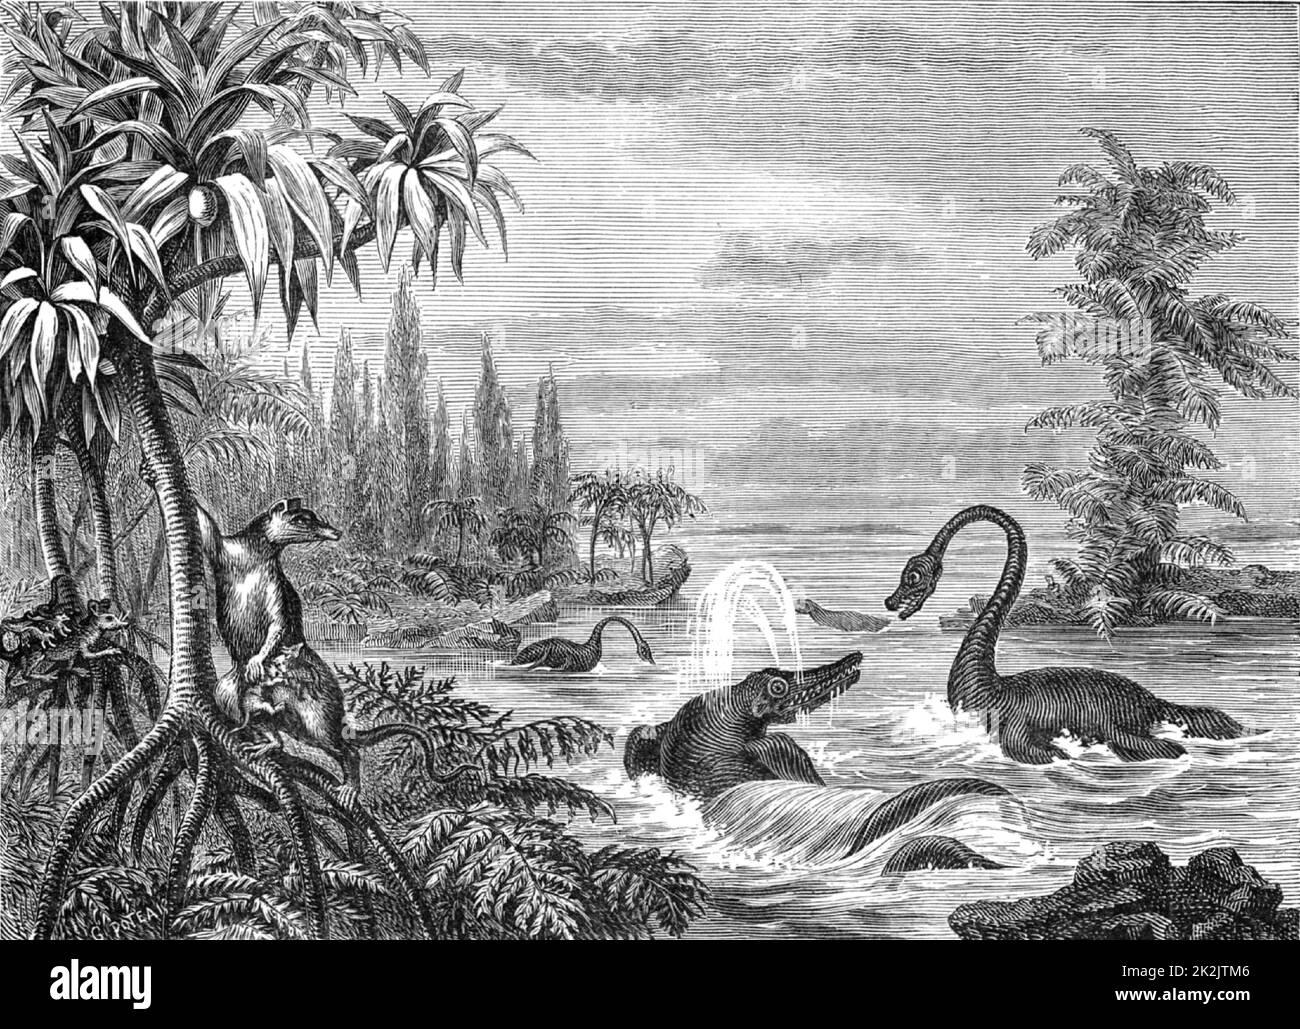 Szene in der unteren Oolithzeit mit Rekonstruktionen von Ichthyosaurus, Plesiosaurus und einem Beuteltier. Aus 'The Popular Encyclopedia' (London, 1888). Gravur. Stockfoto